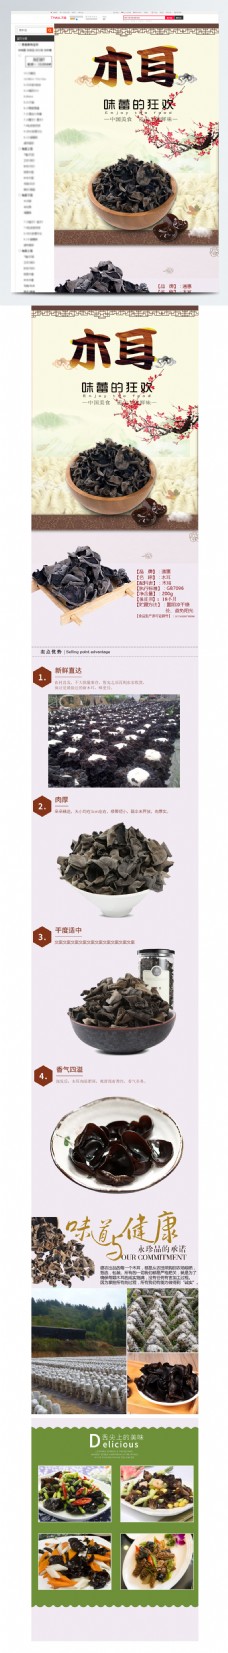 树木木耳干货食品中国风详情页模板源文件